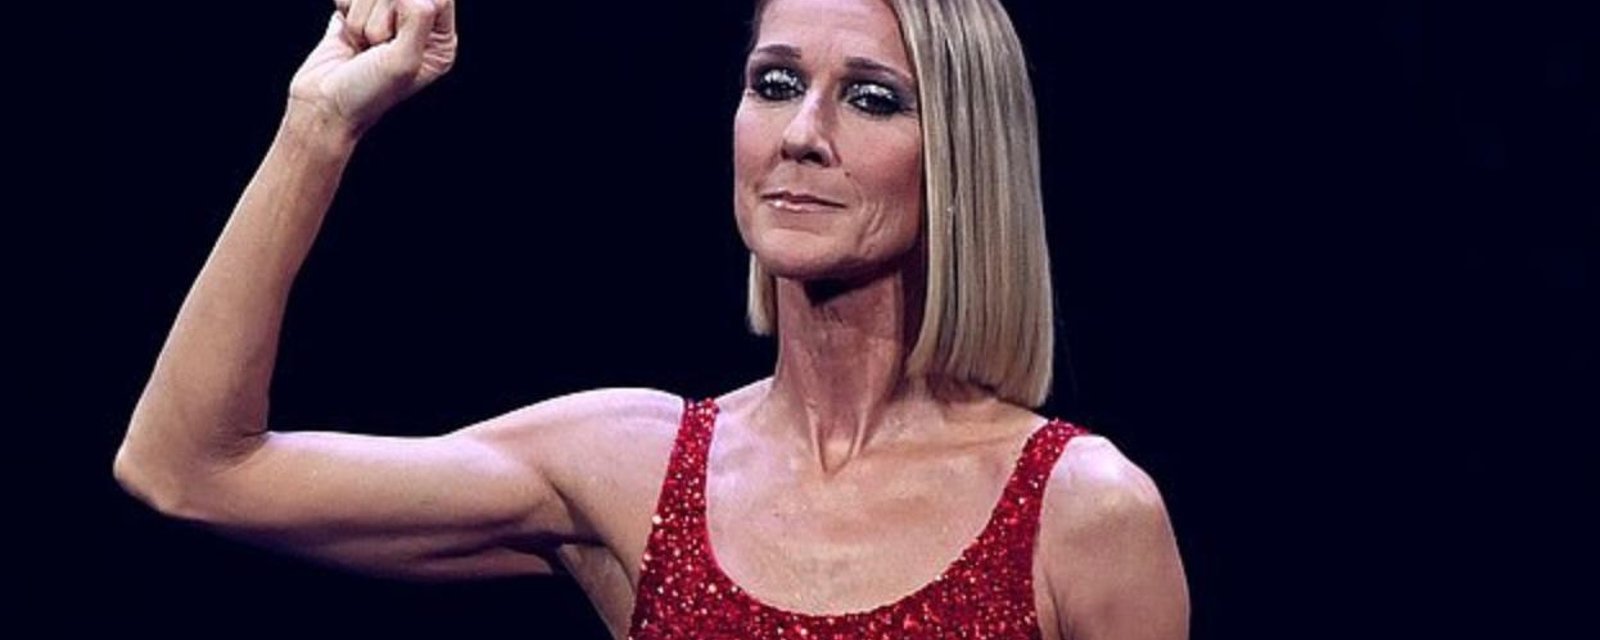 Céline Dion, en larmes sur scène, met des mots sur sa douleur après le décès de sa mère